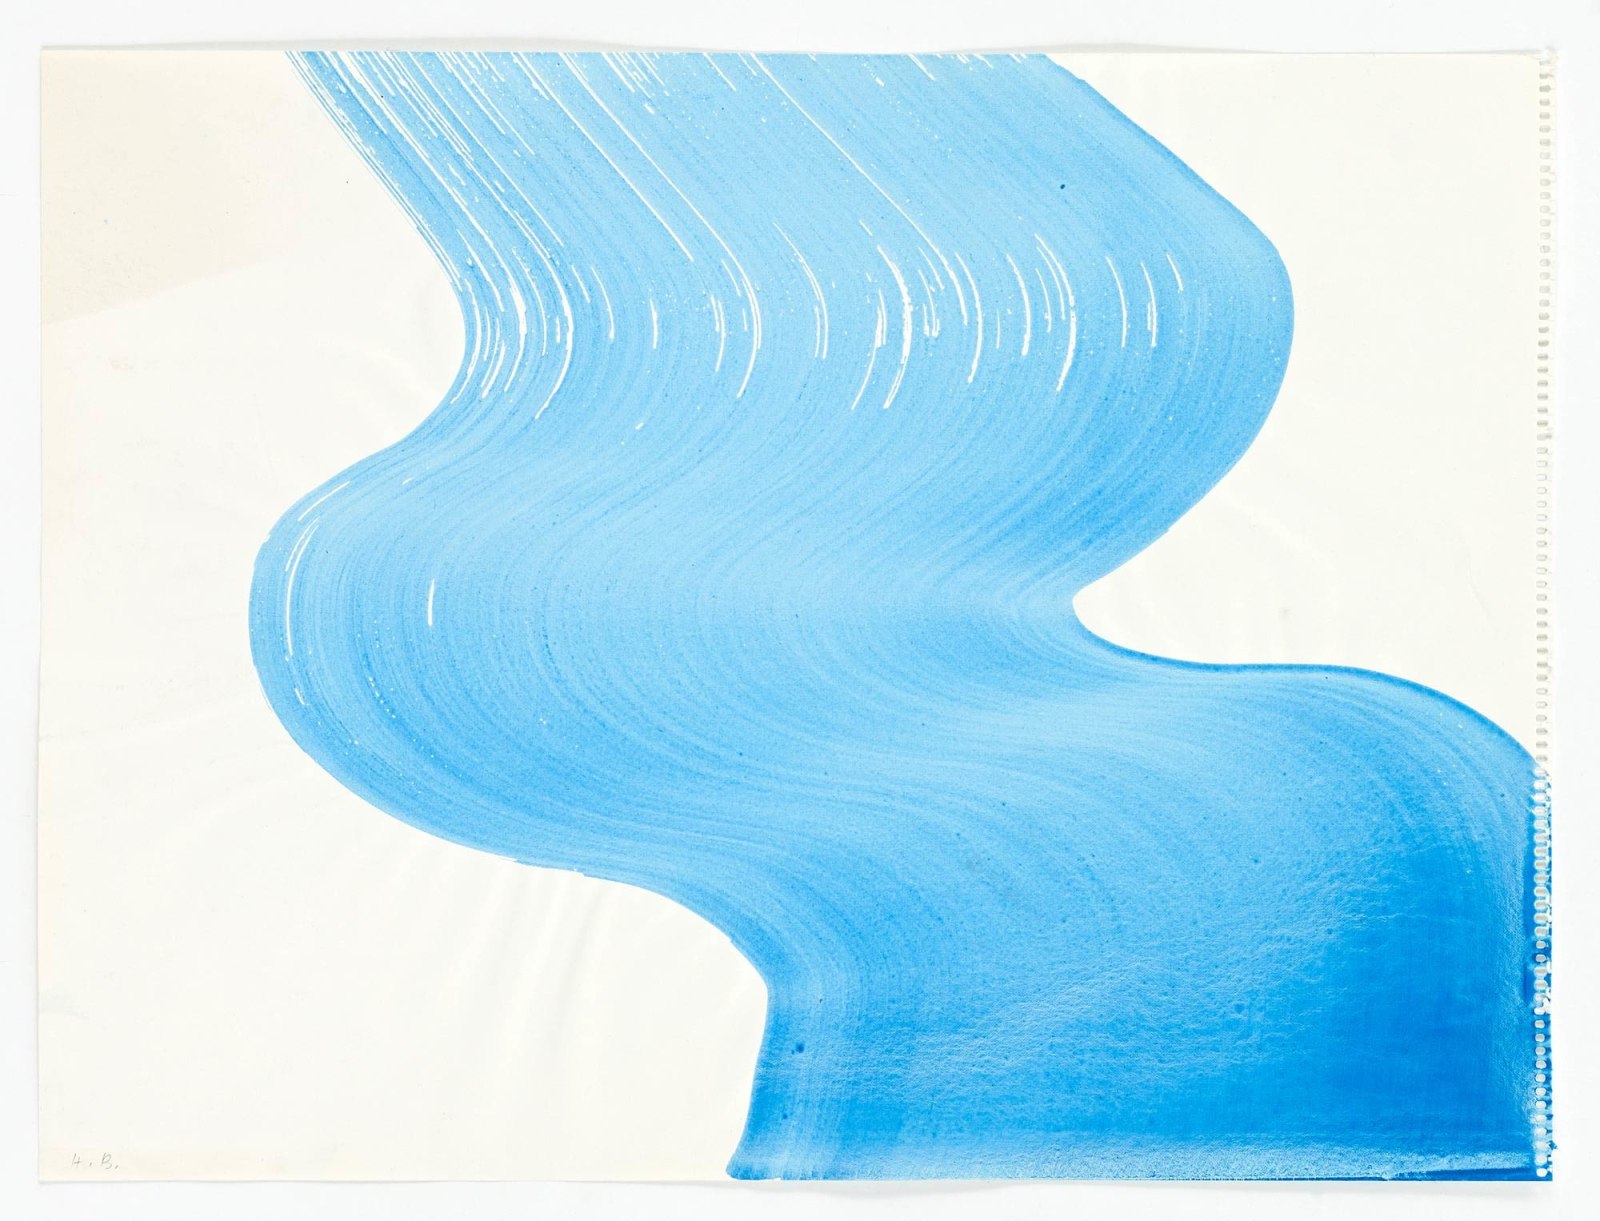 HEIDI BUCHER, Untitled (Wasserzeichnung / Water drawing), 1985